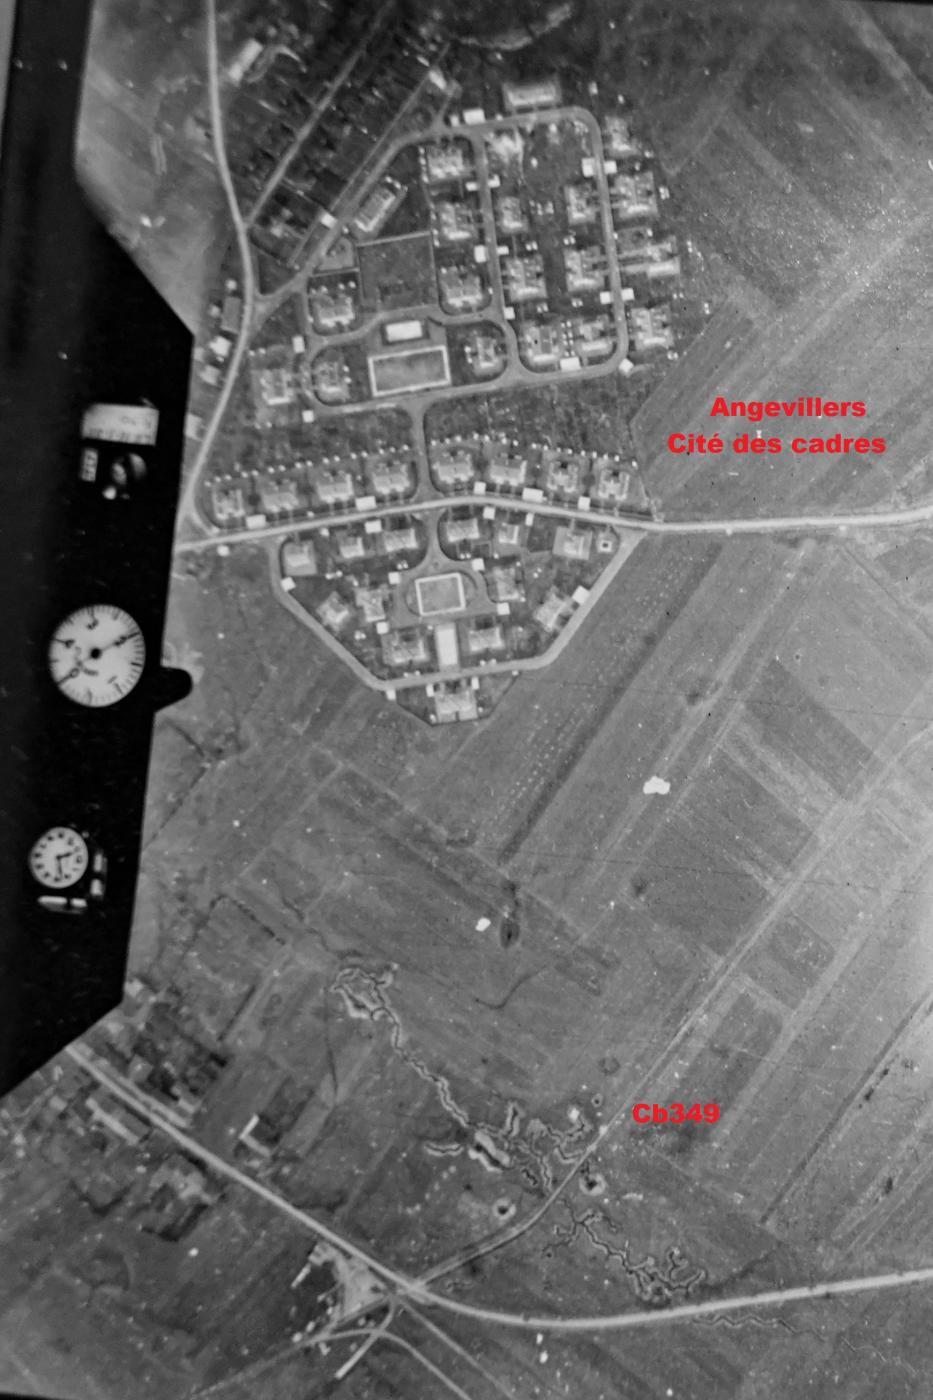 Ligne Maginot - CB349 - ANGEVILLERS SUD - (Blockhaus pour arme infanterie) - Vue aérienne du 11 mars 1940.
Mission 66 Alt 2000 
Observateur Lt Gaubert